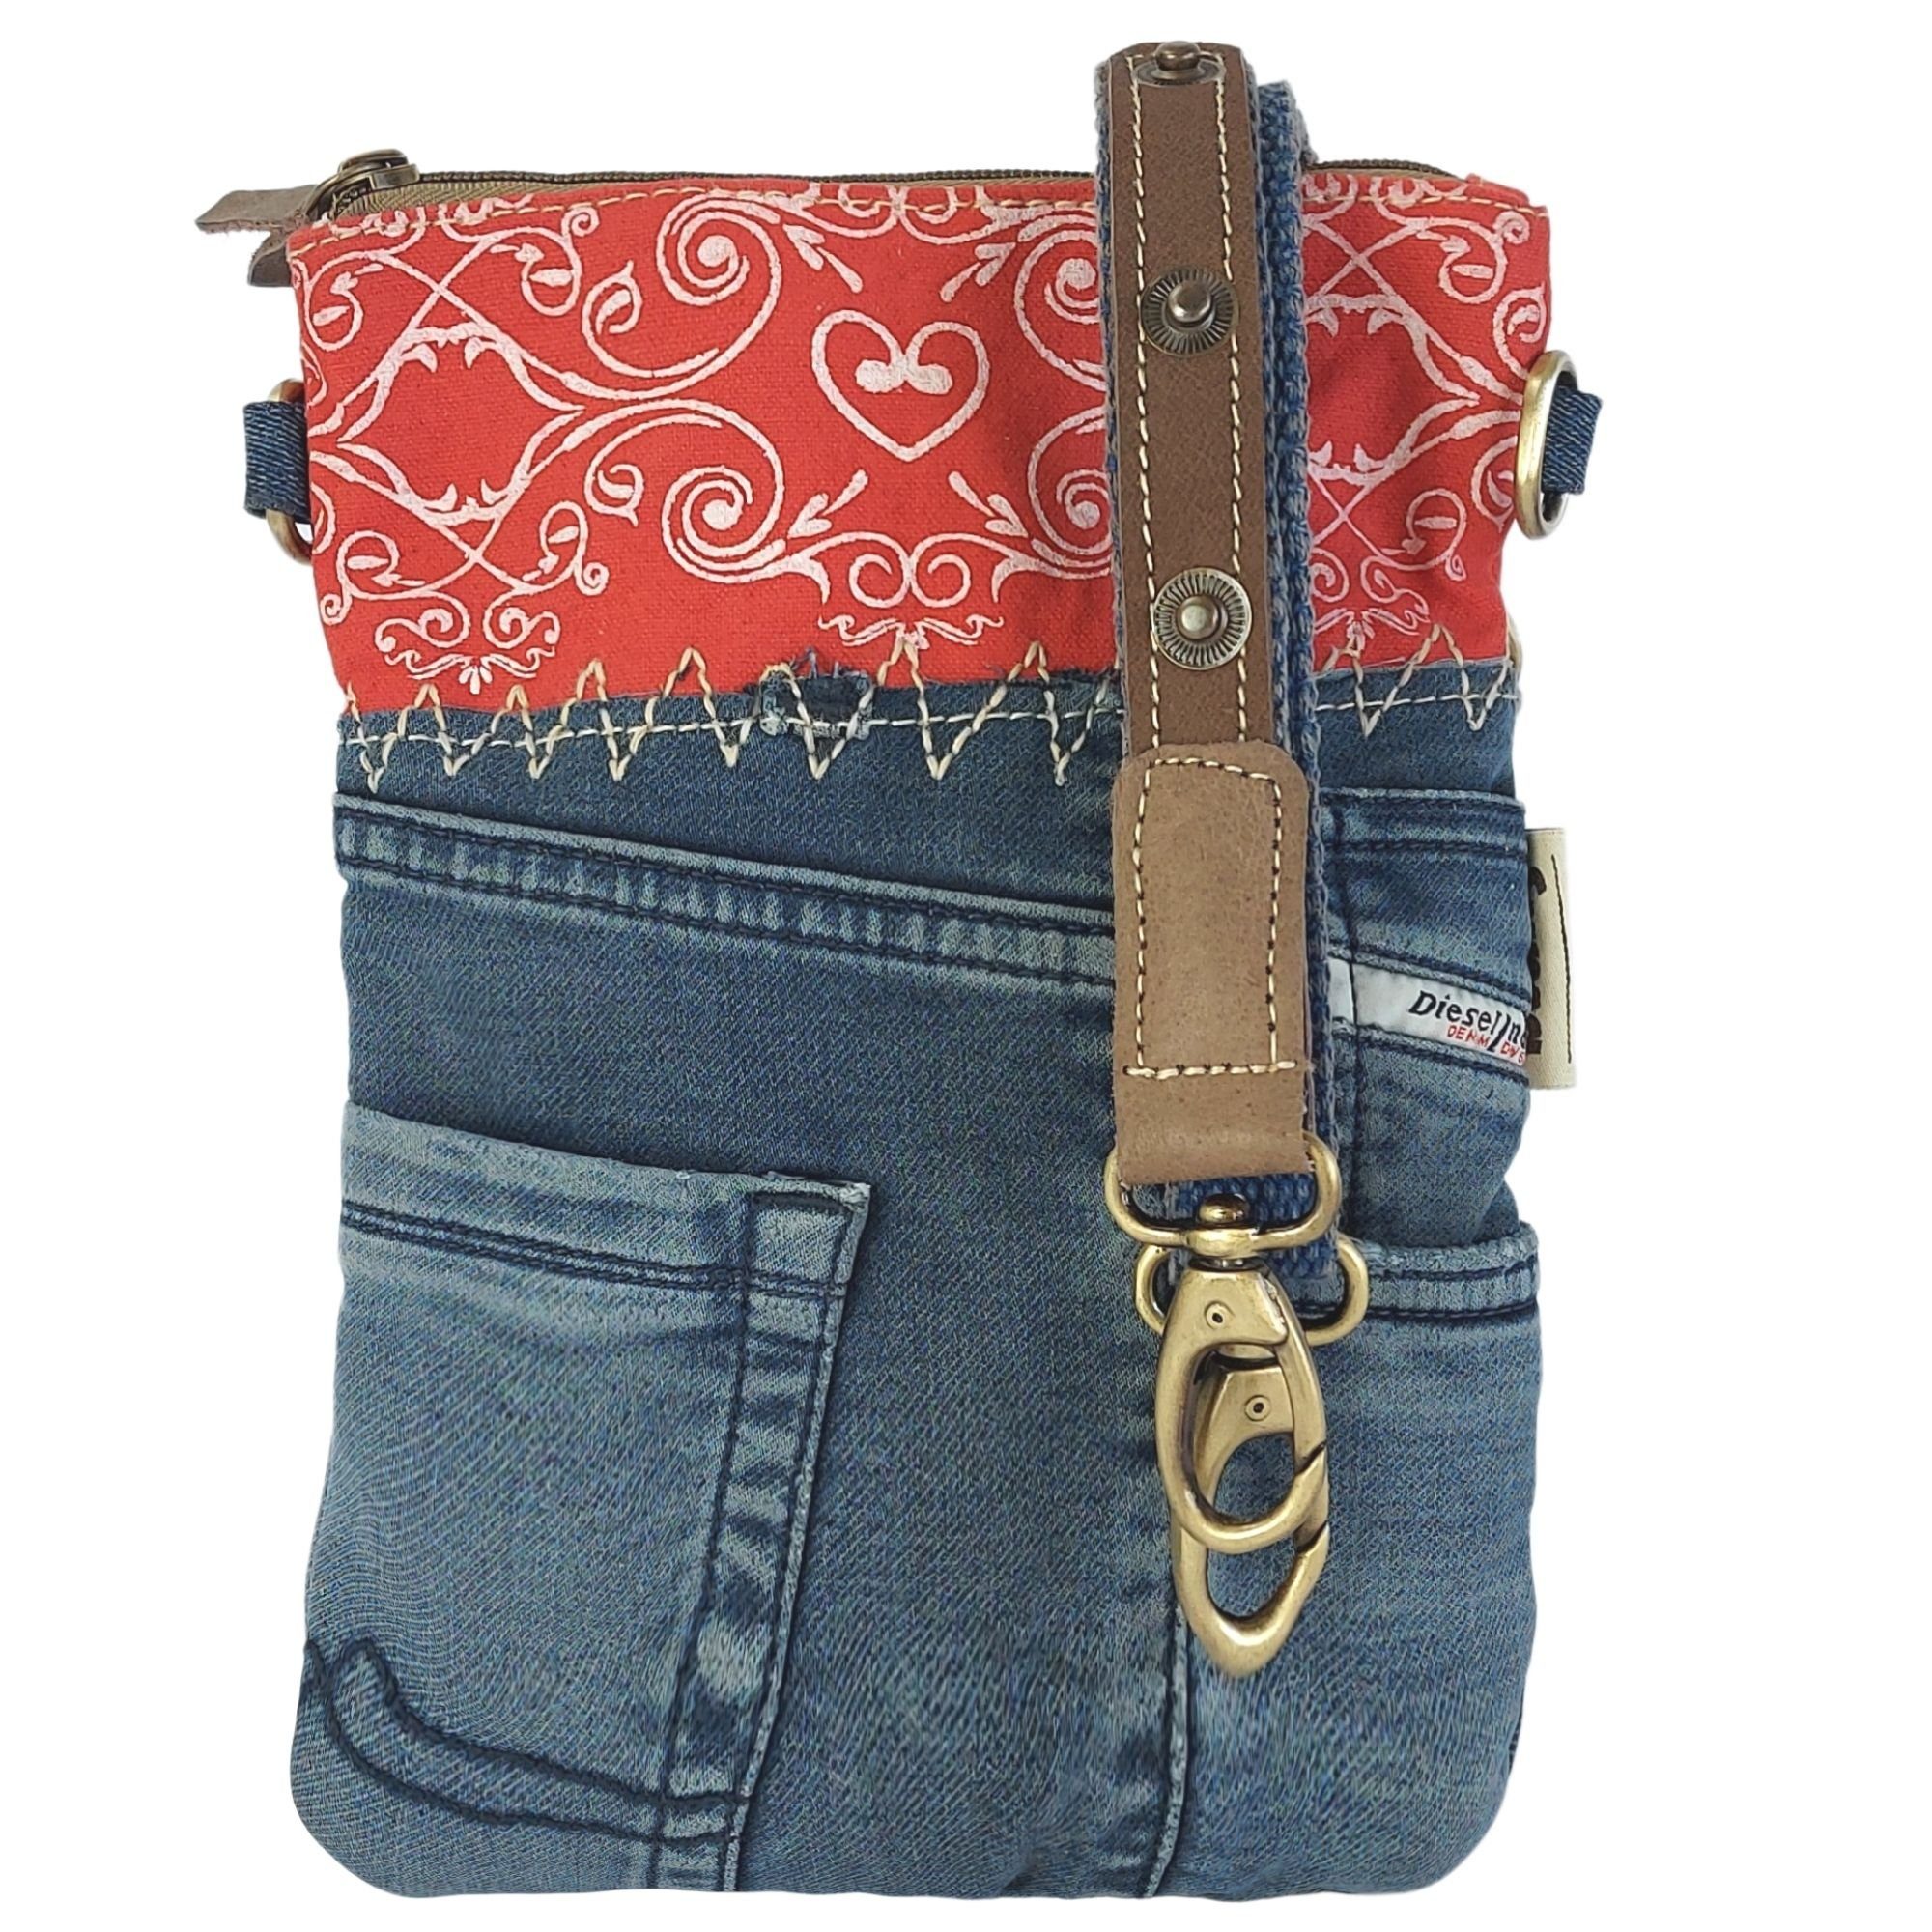 Crossbody Umhängetasche Damen Umhängetasche Sunsa Kleine Bag. Jeans, und 52669, rot/blau recyceltes aus Canvas recycelte Material enthält